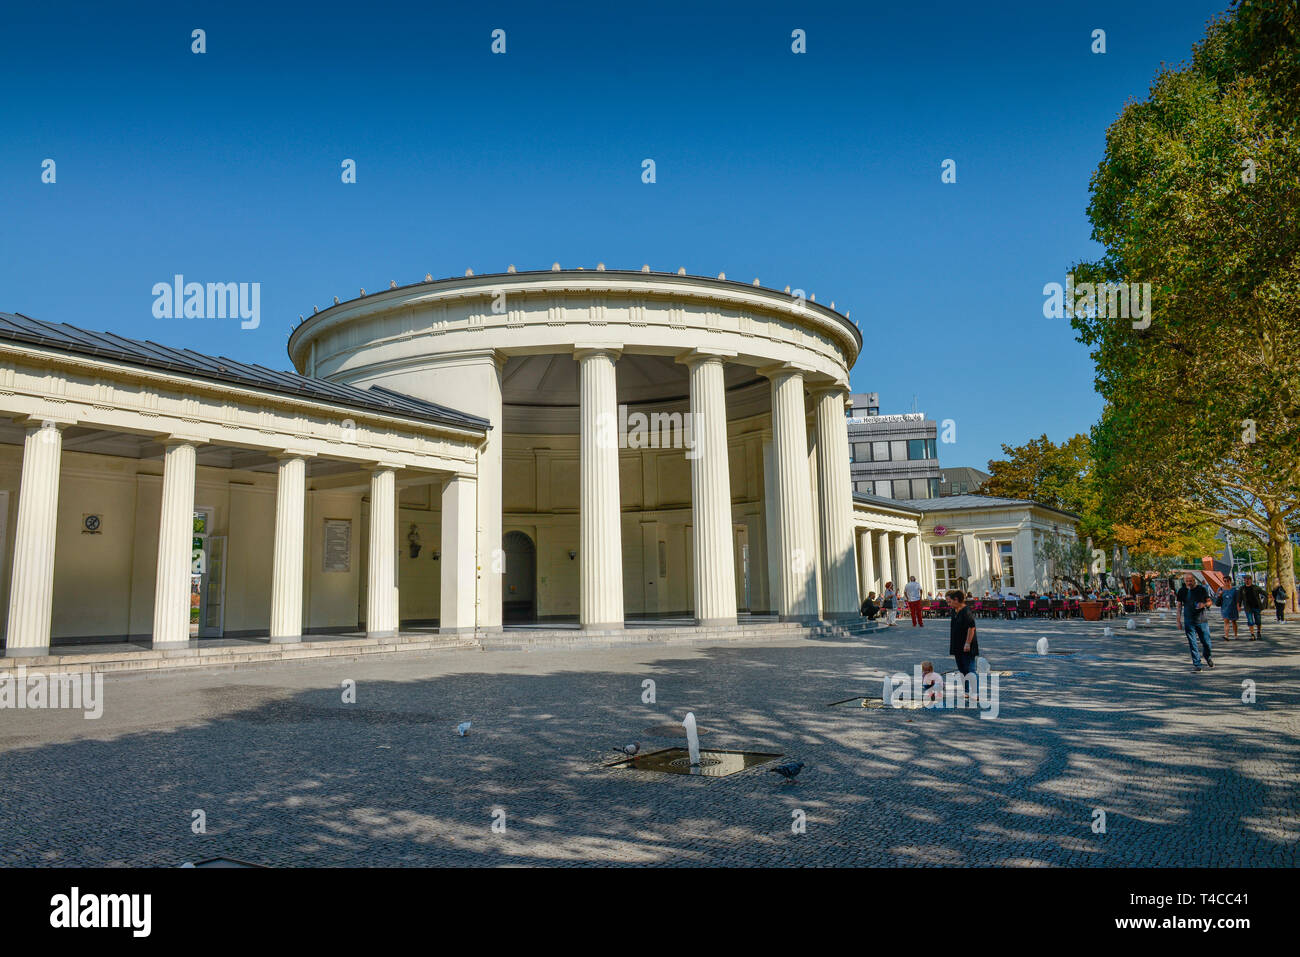 Elisenbrunnen, Friedrich-Wilhelm-Platz, Aquisgrán, Nordrhein-Westfalen, Deutschland Foto de stock